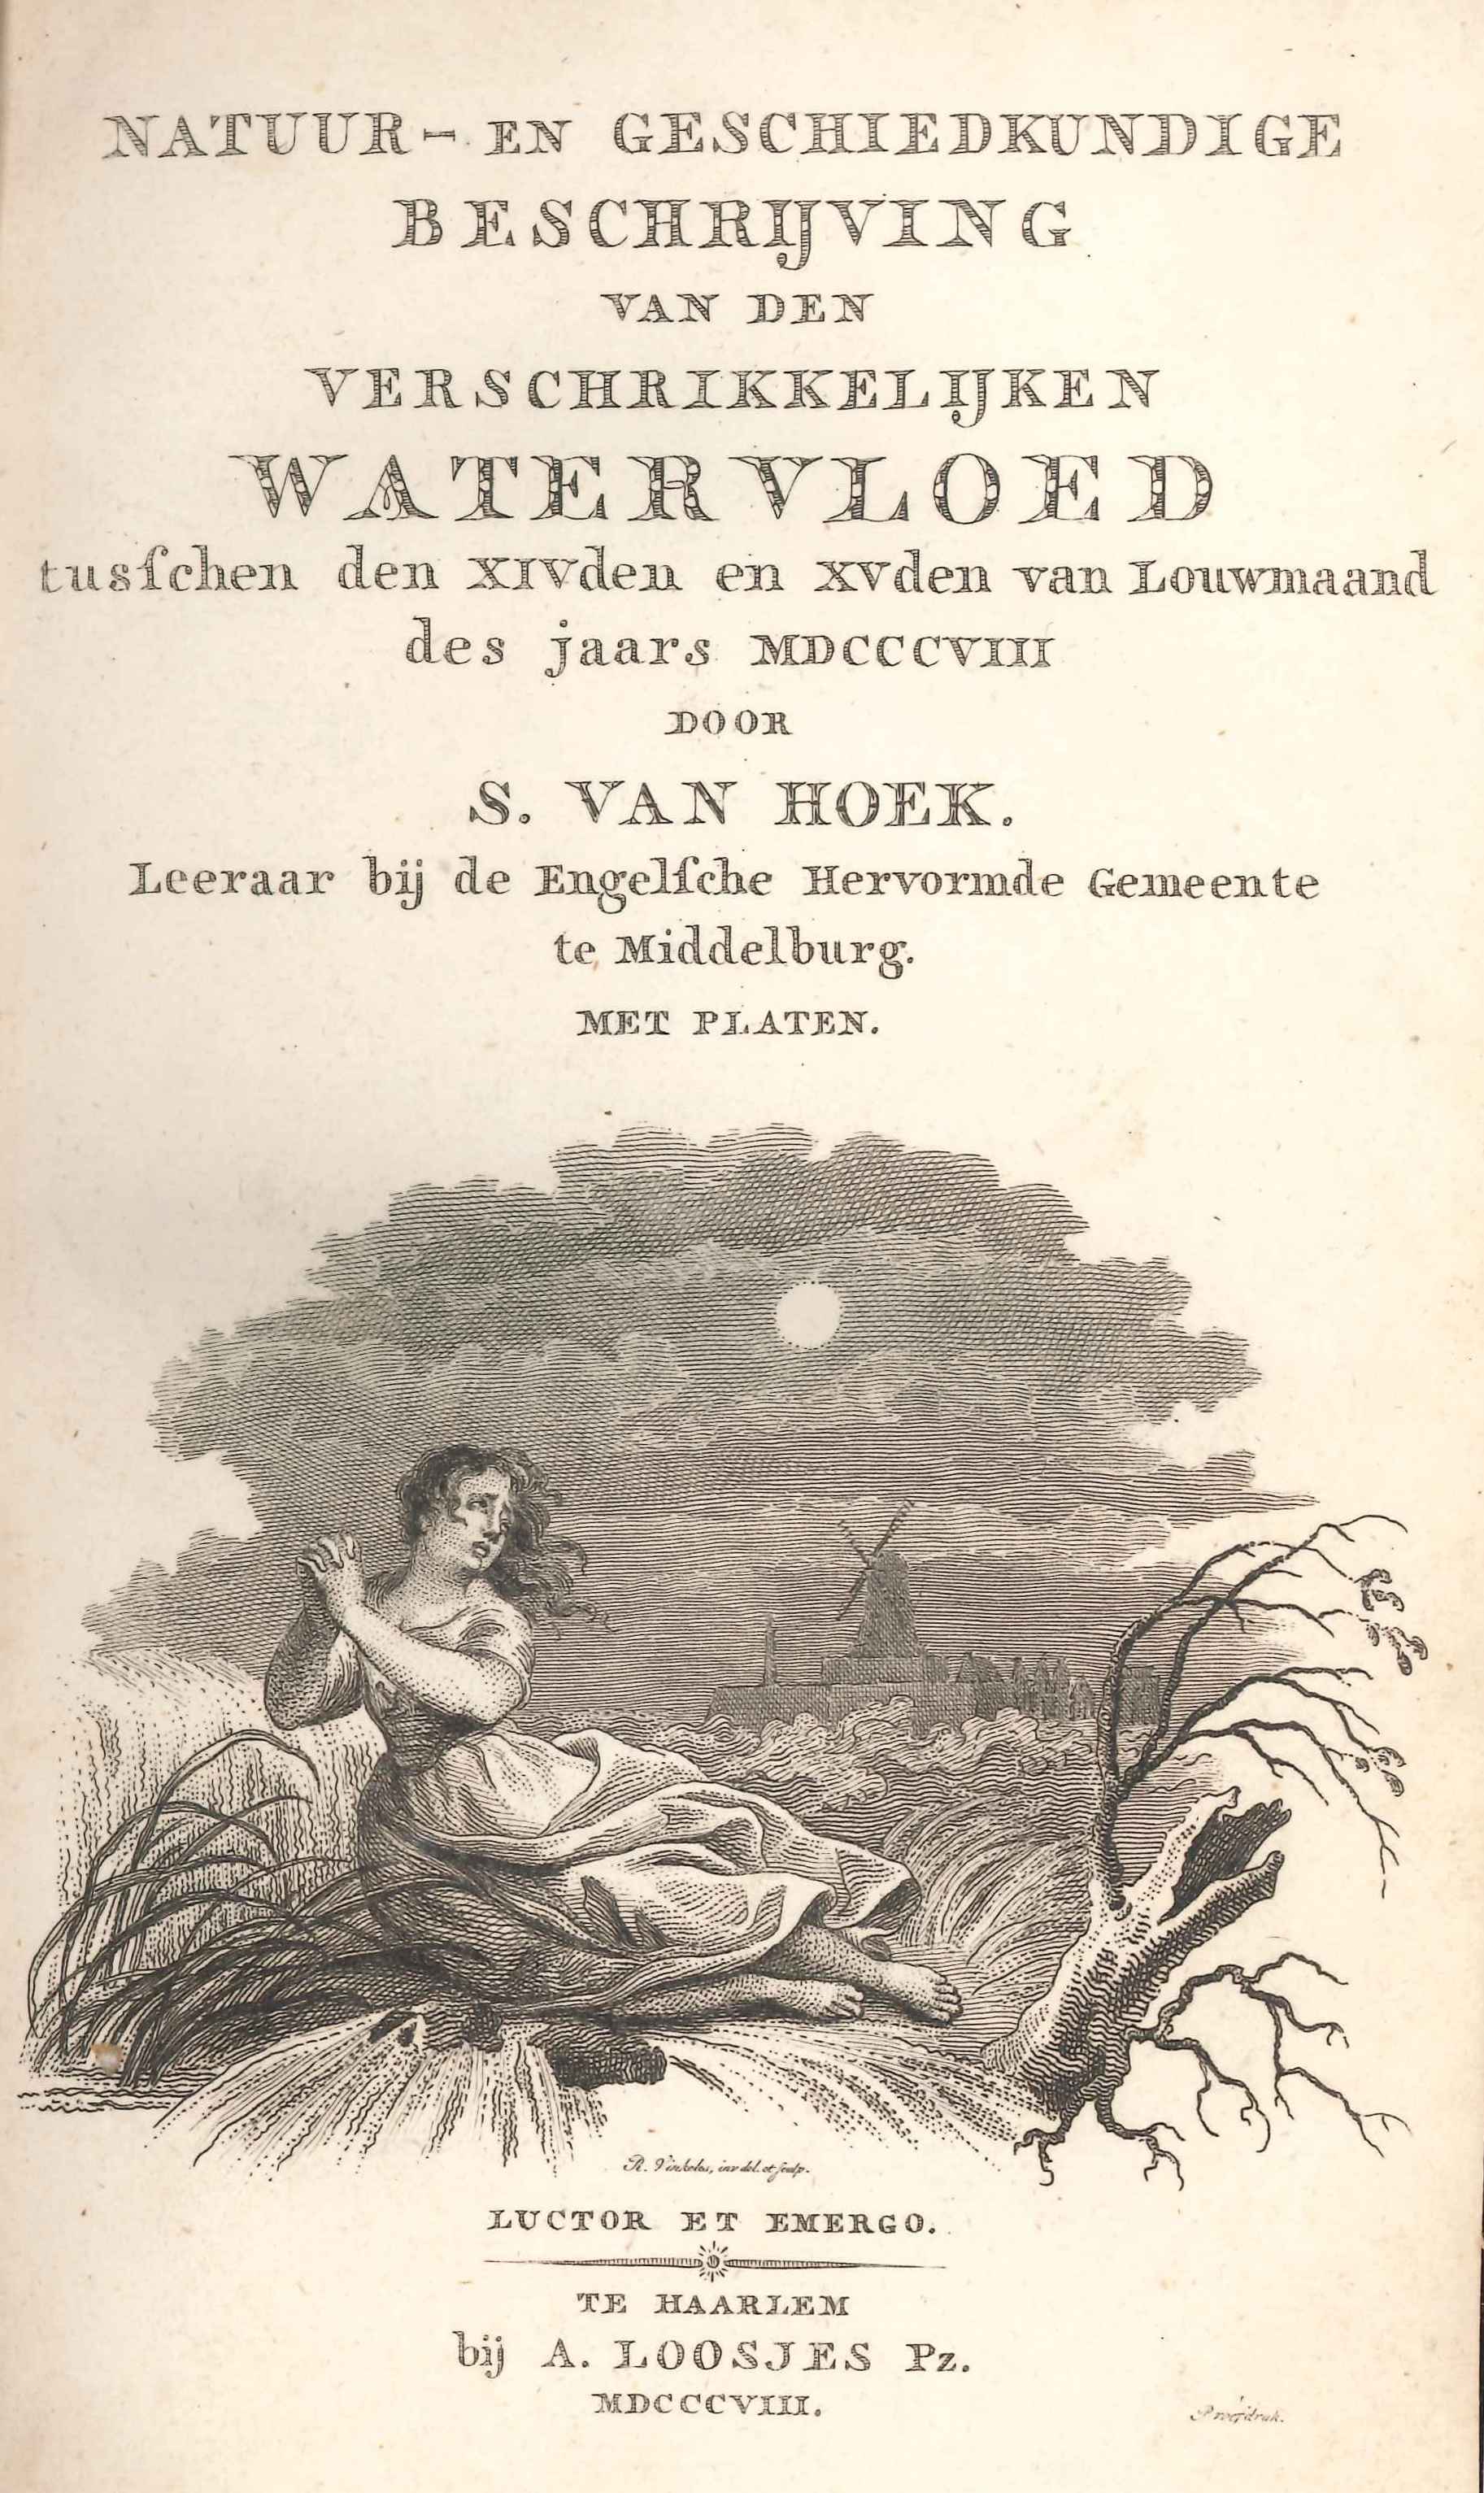 Titelpagina van de beschrijving van de vloed van 1808, door S. van Hoek. 1808.